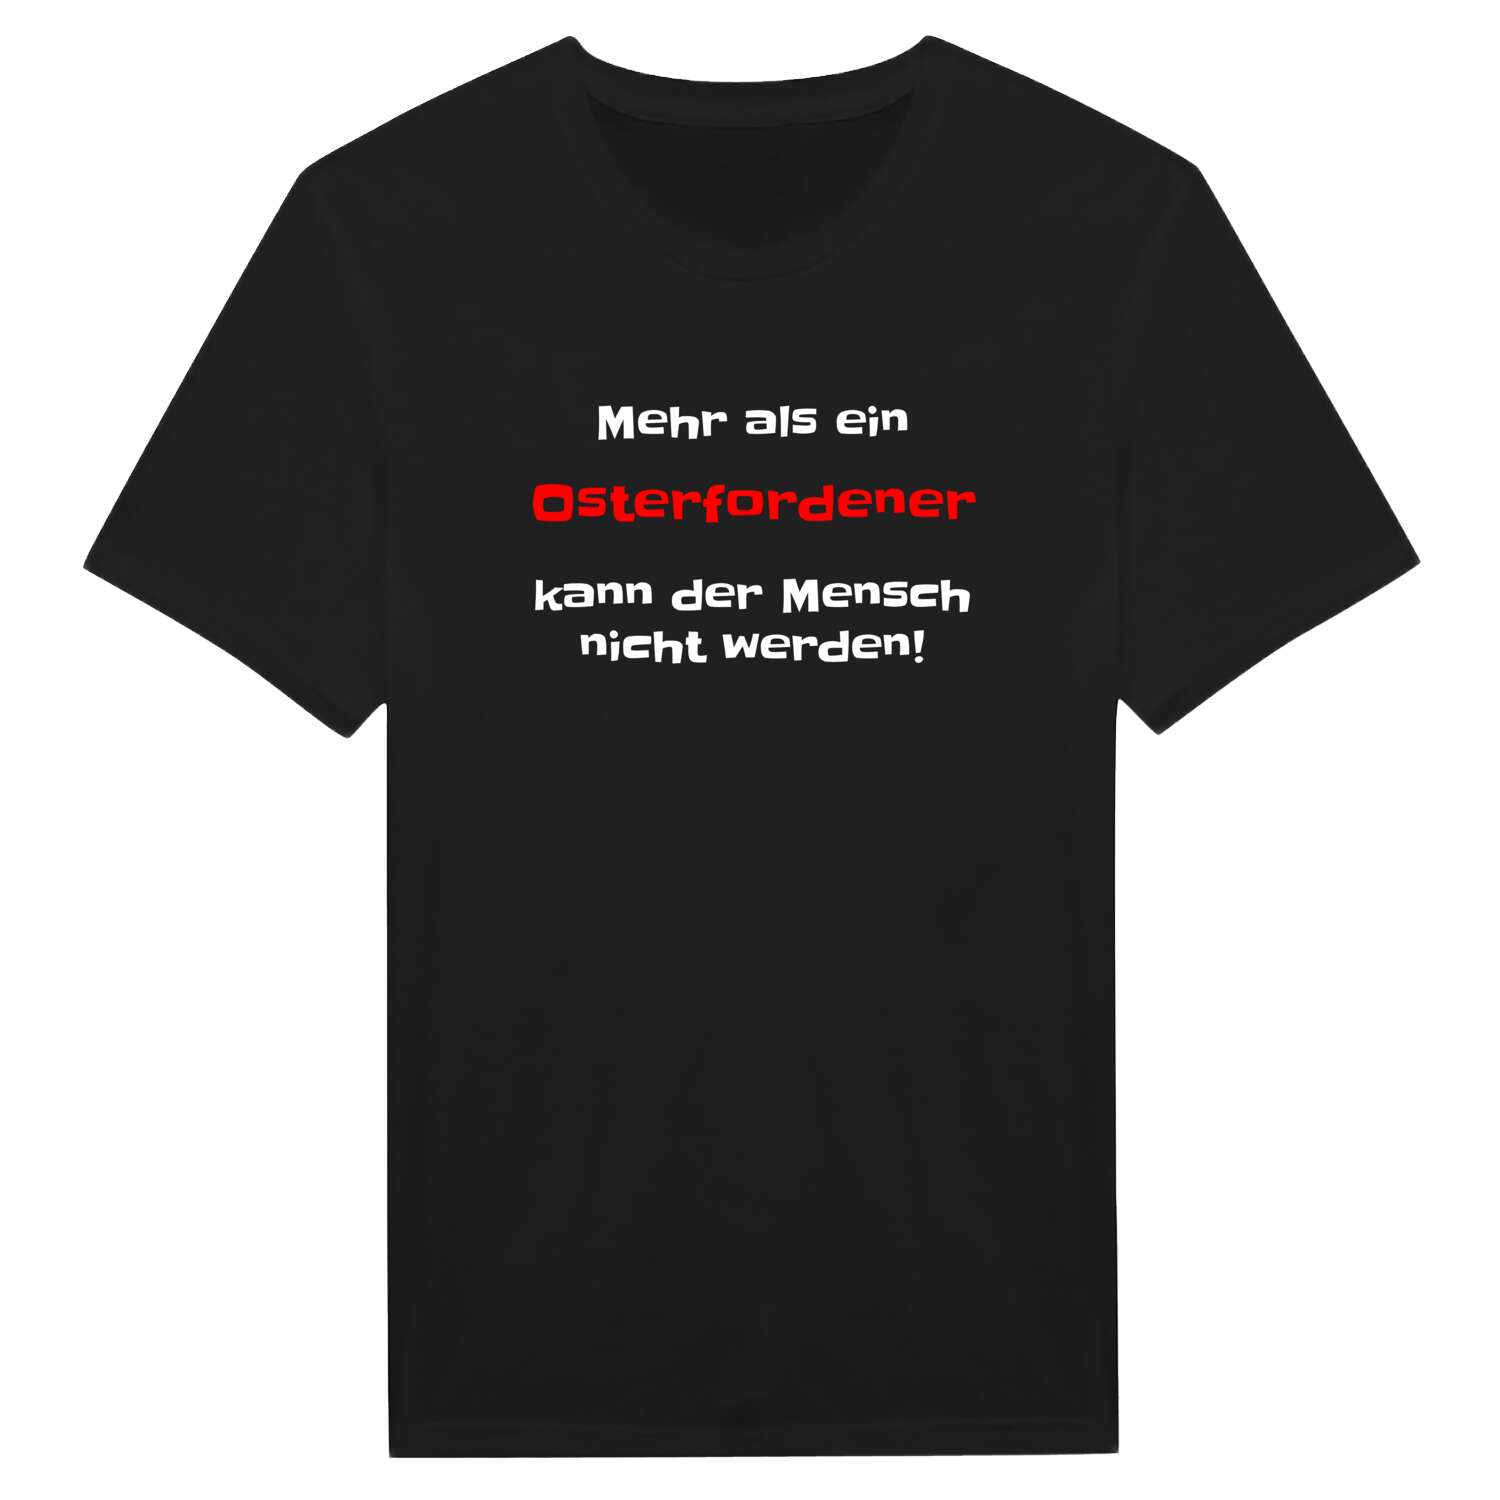 Osterforde T-Shirt »Mehr als ein«